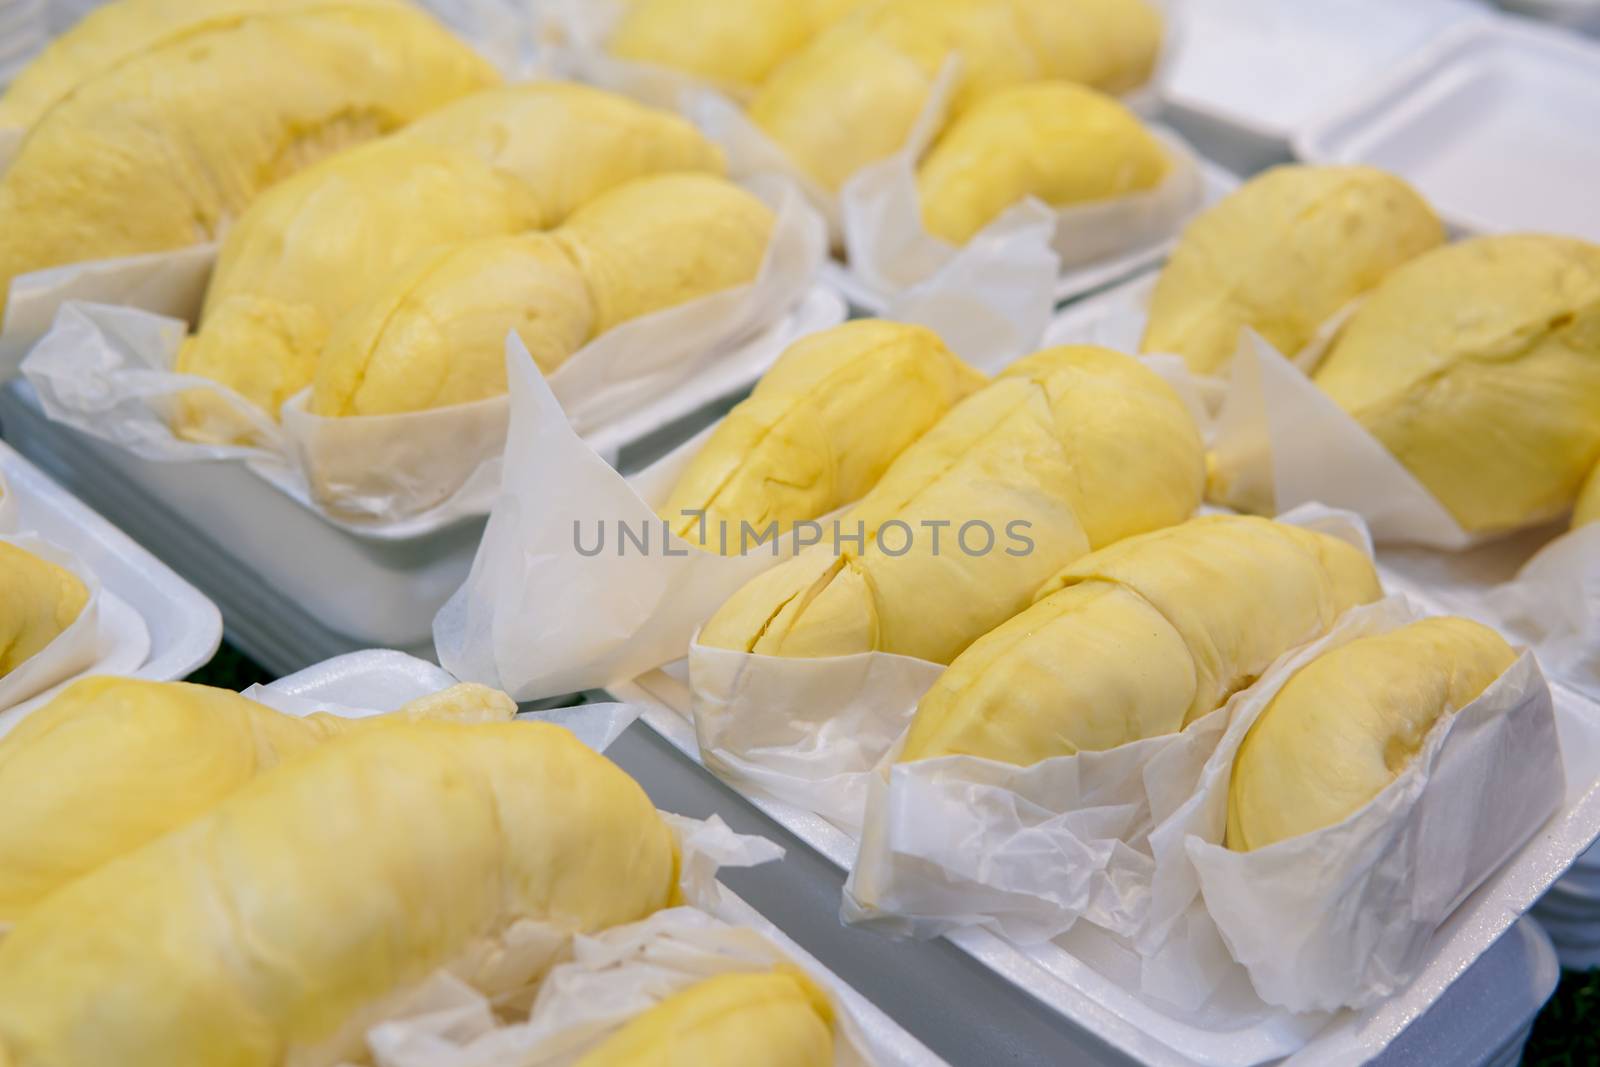 durian in foam box by antpkr